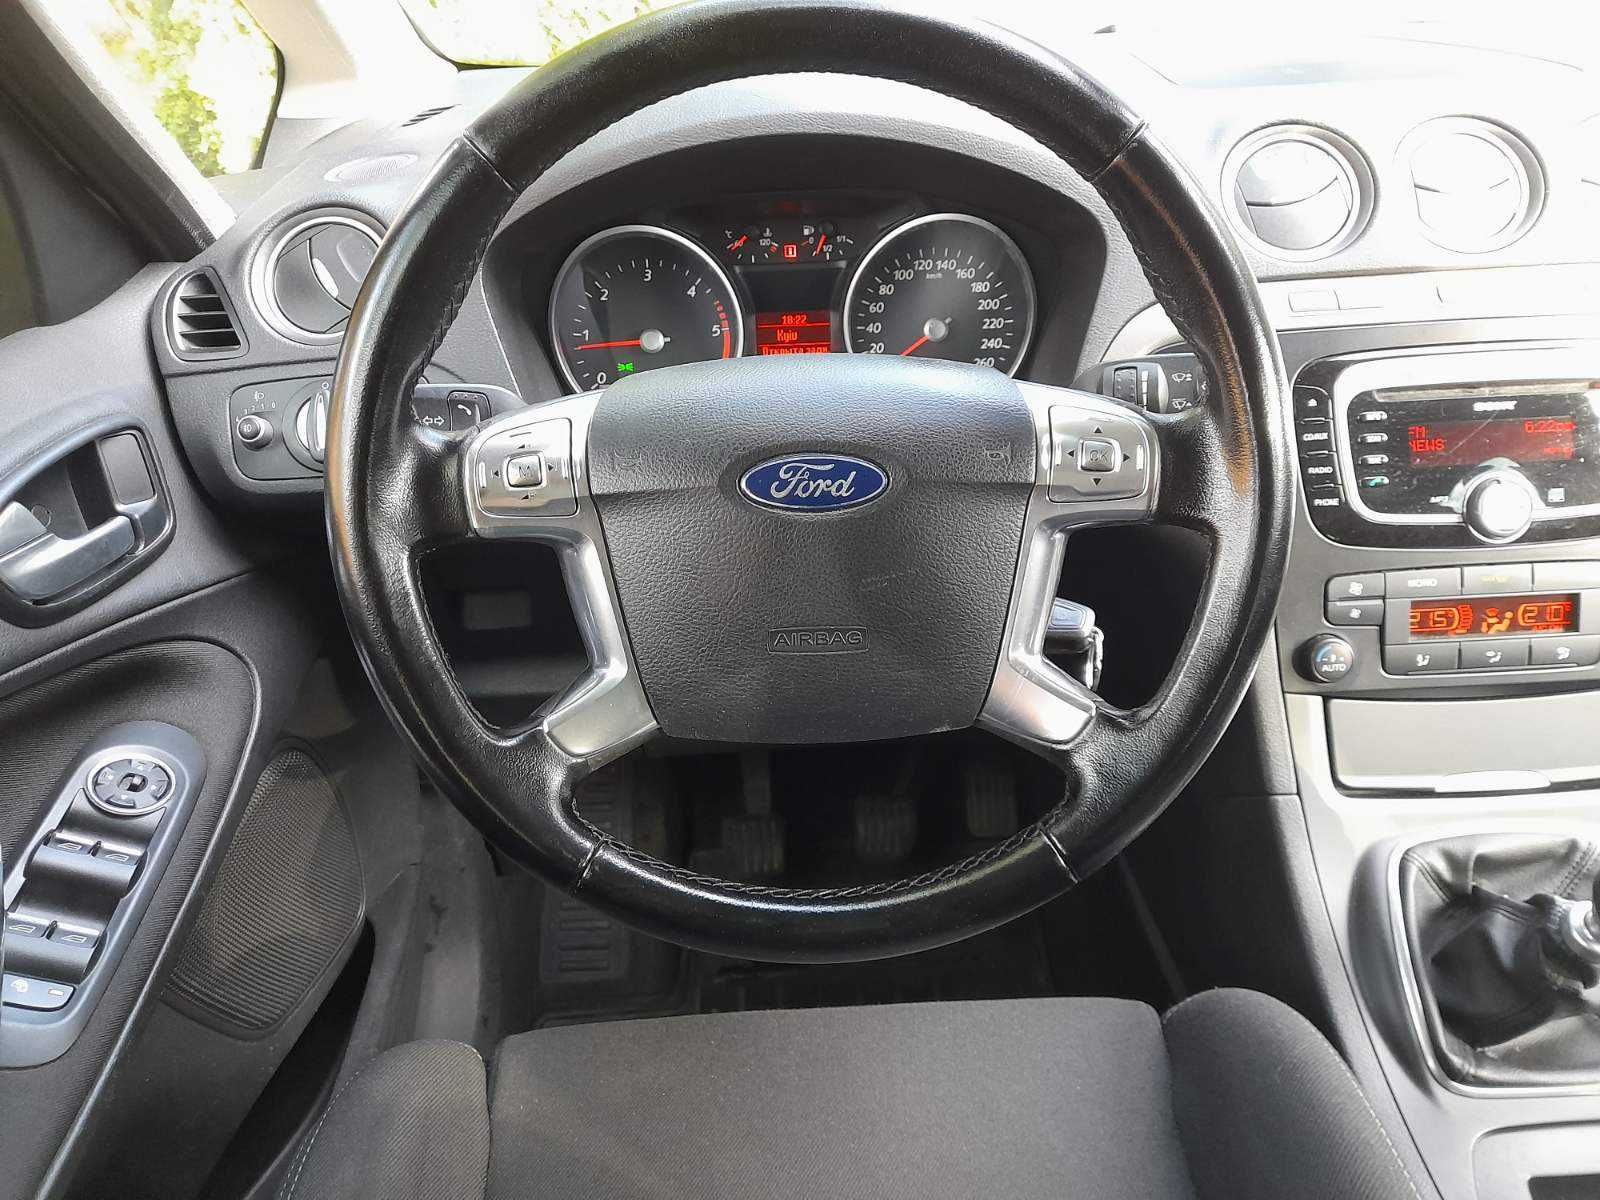 Ford S-MAX 2012. 7місць. 5л/100км. 900кг вантажу. Бездоганний стан.